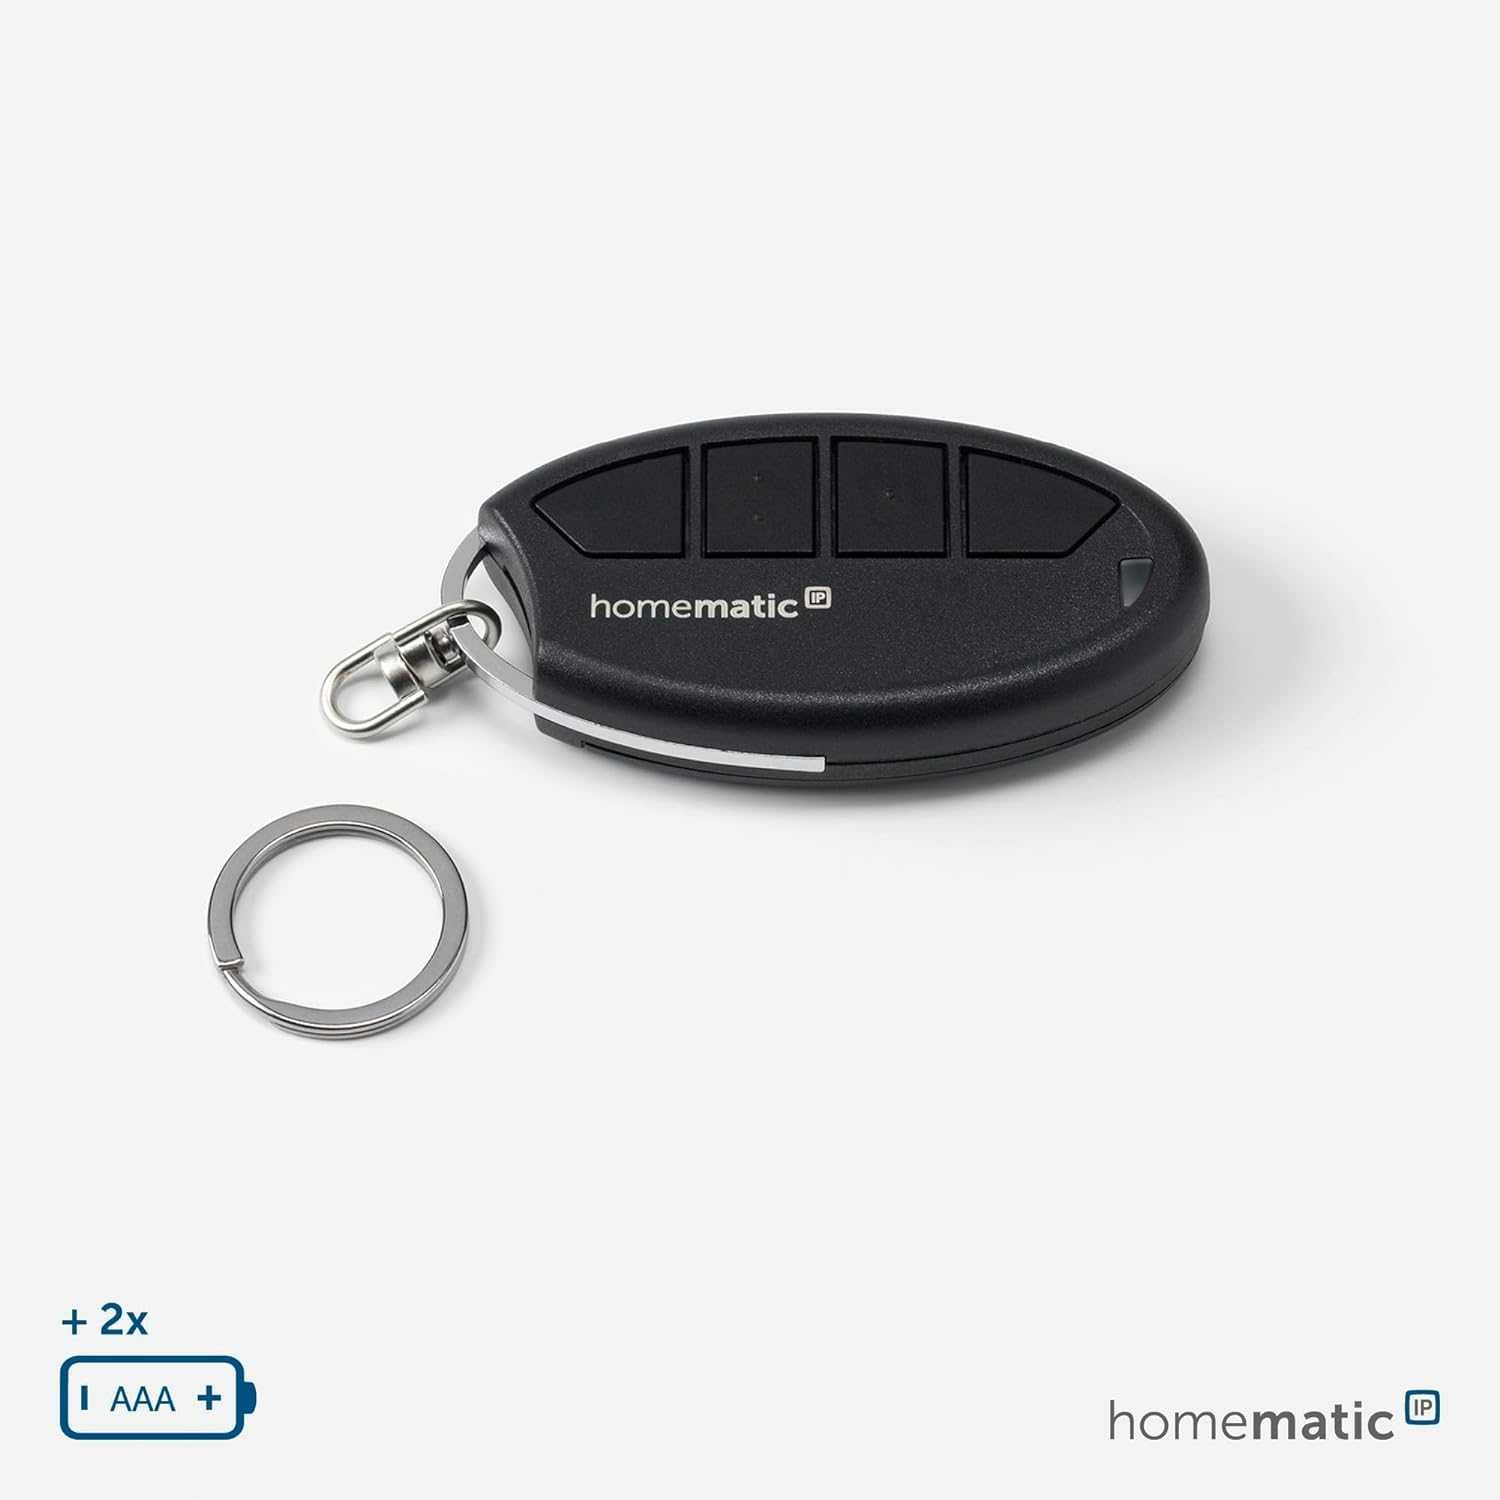 Telecomanda Homematic IP 140740A0, 4 butoane, culoare negru